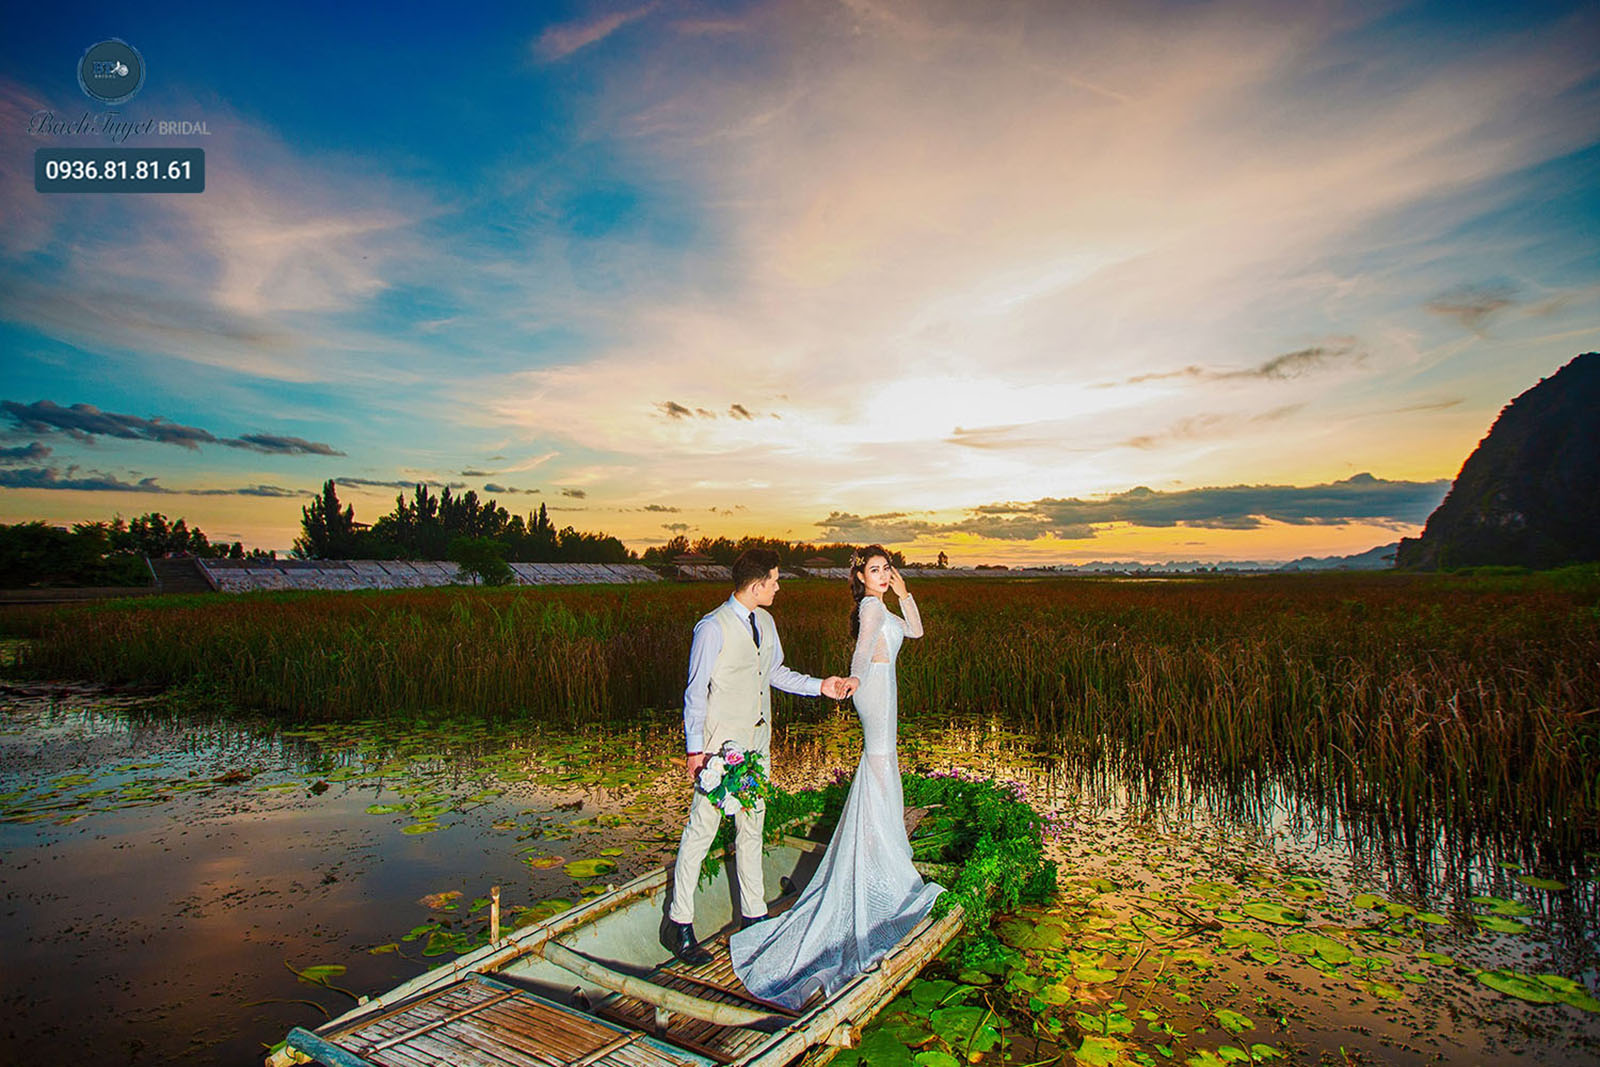 Chụp ảnh cưới Tràng An – Ninh Bình: địa điểm không thể bỏ qua mùa cưới